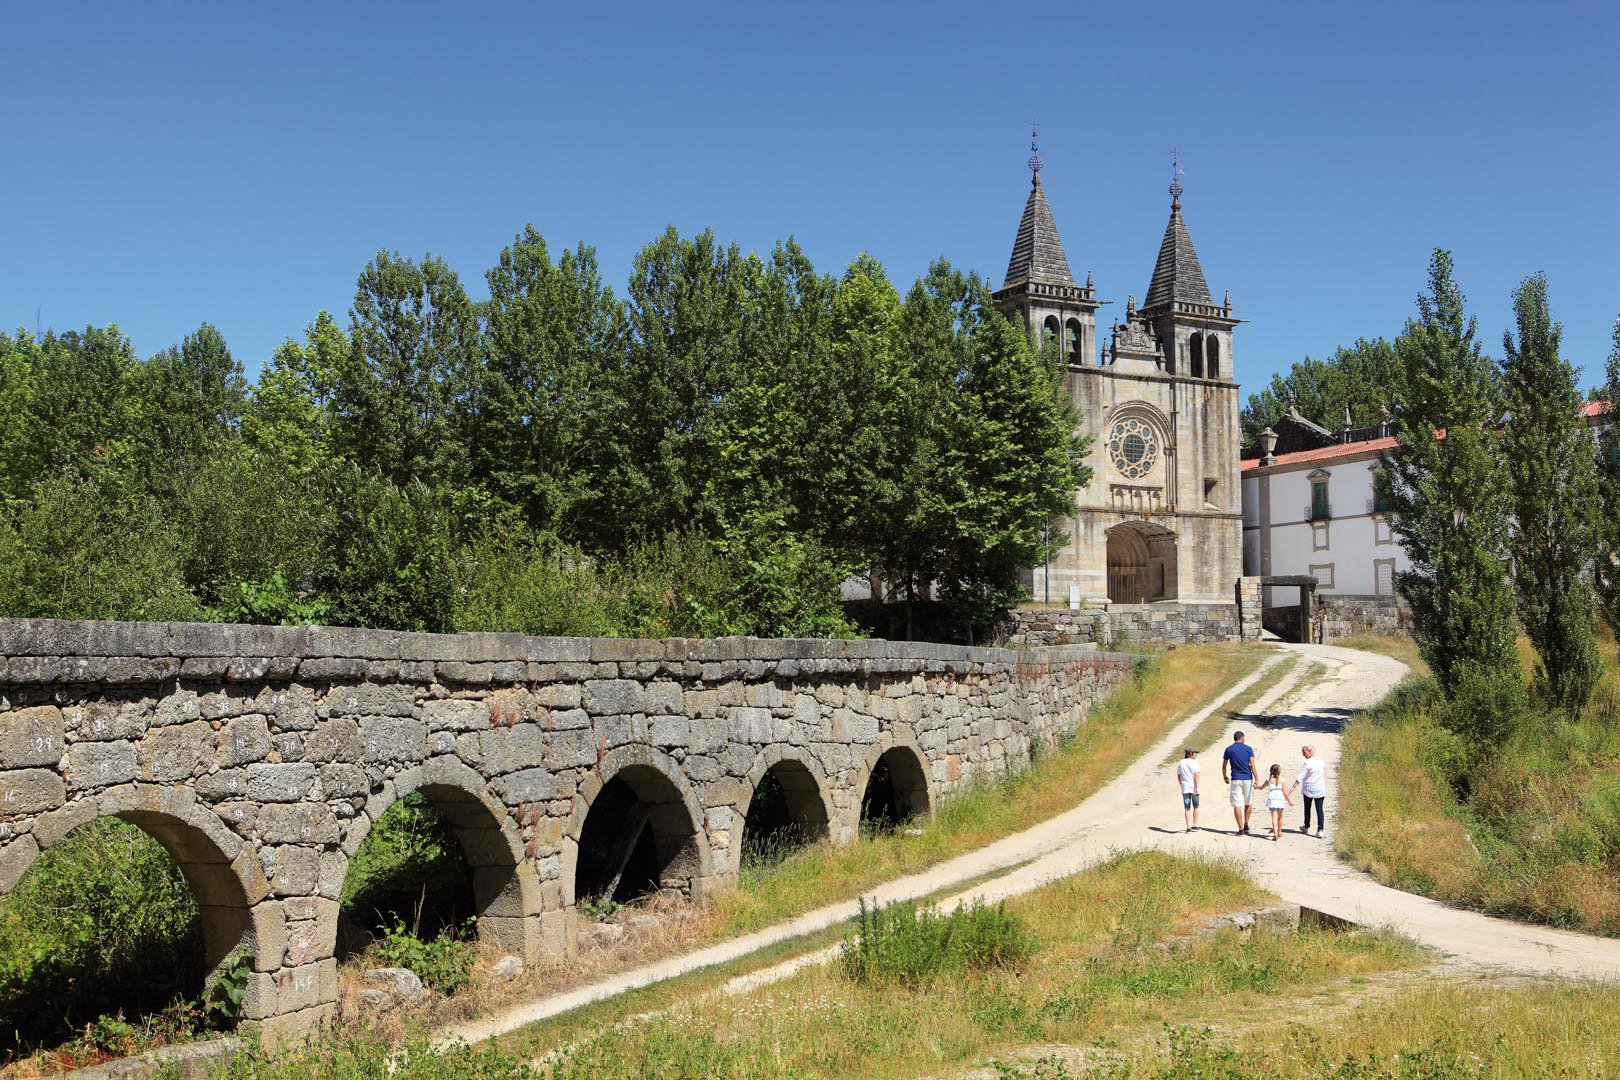 Ruta del Románico participa en un proyecto de Turismo de Portugal